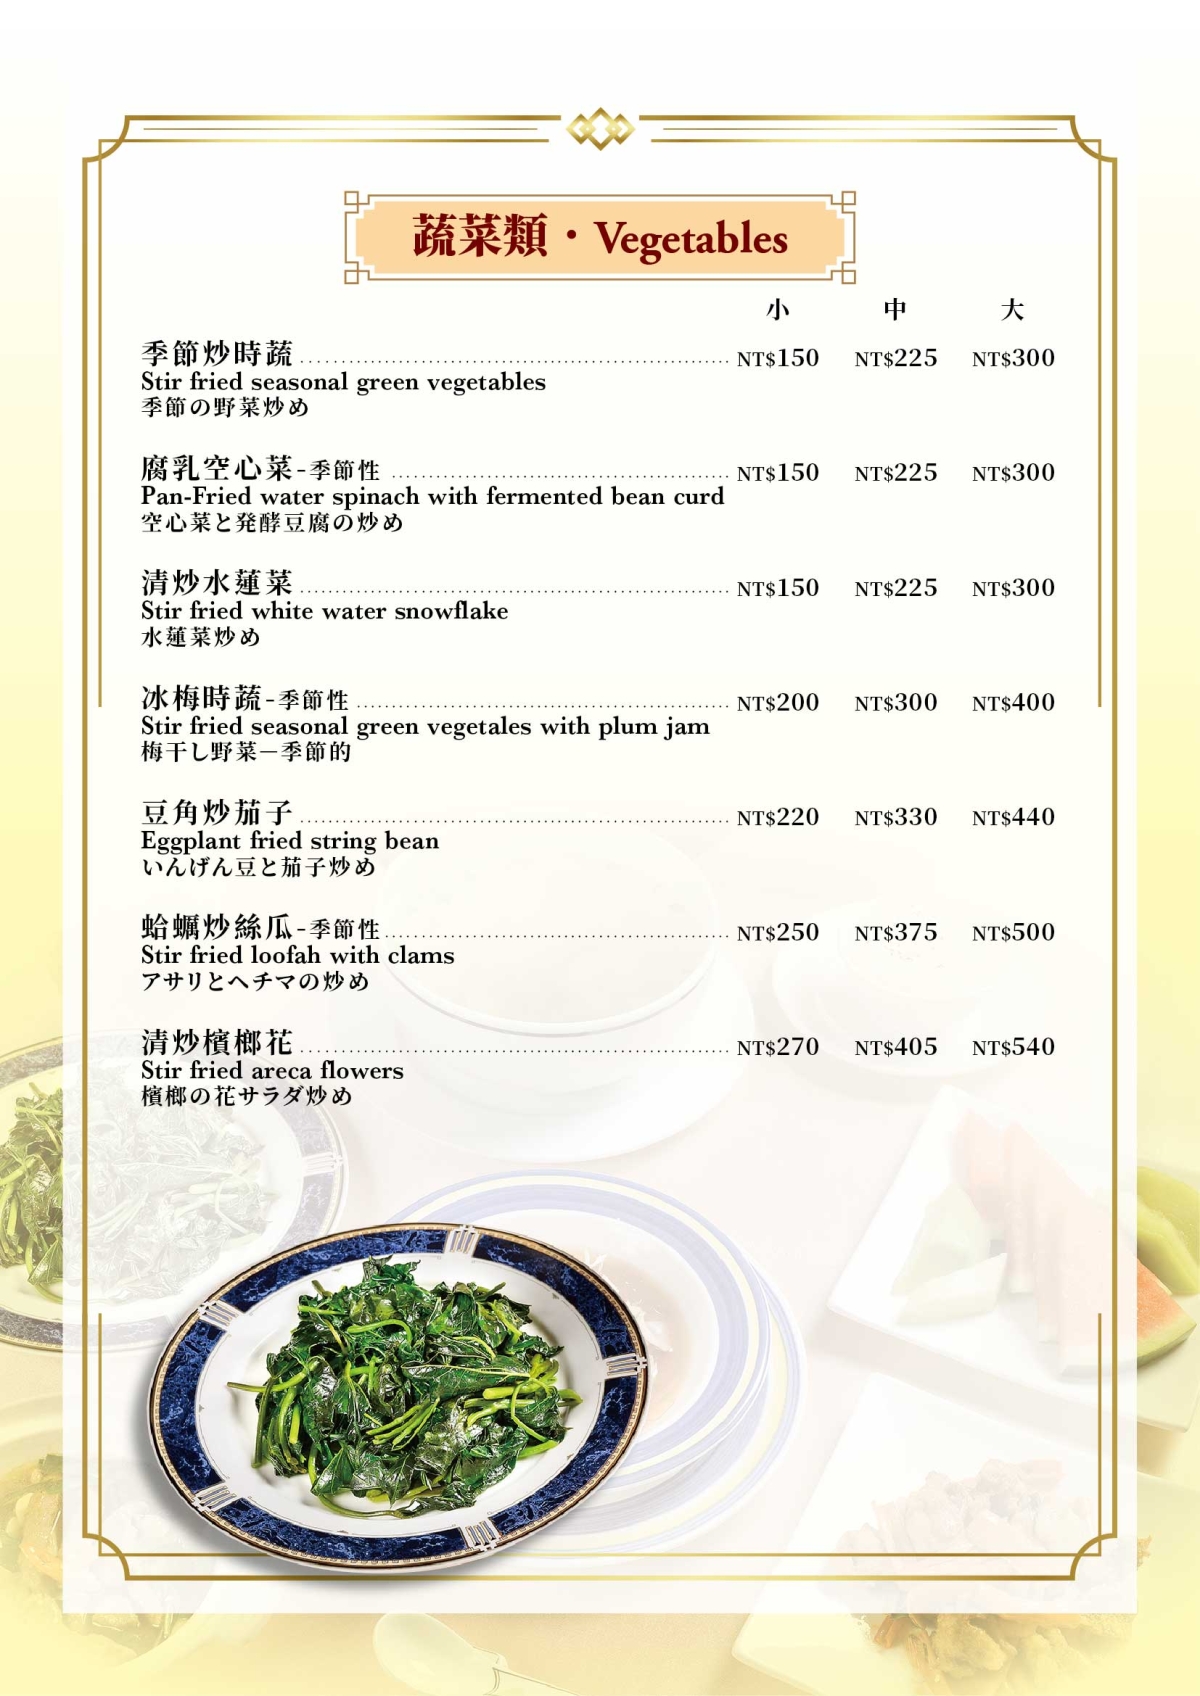 中式菜單10_蔬菜類